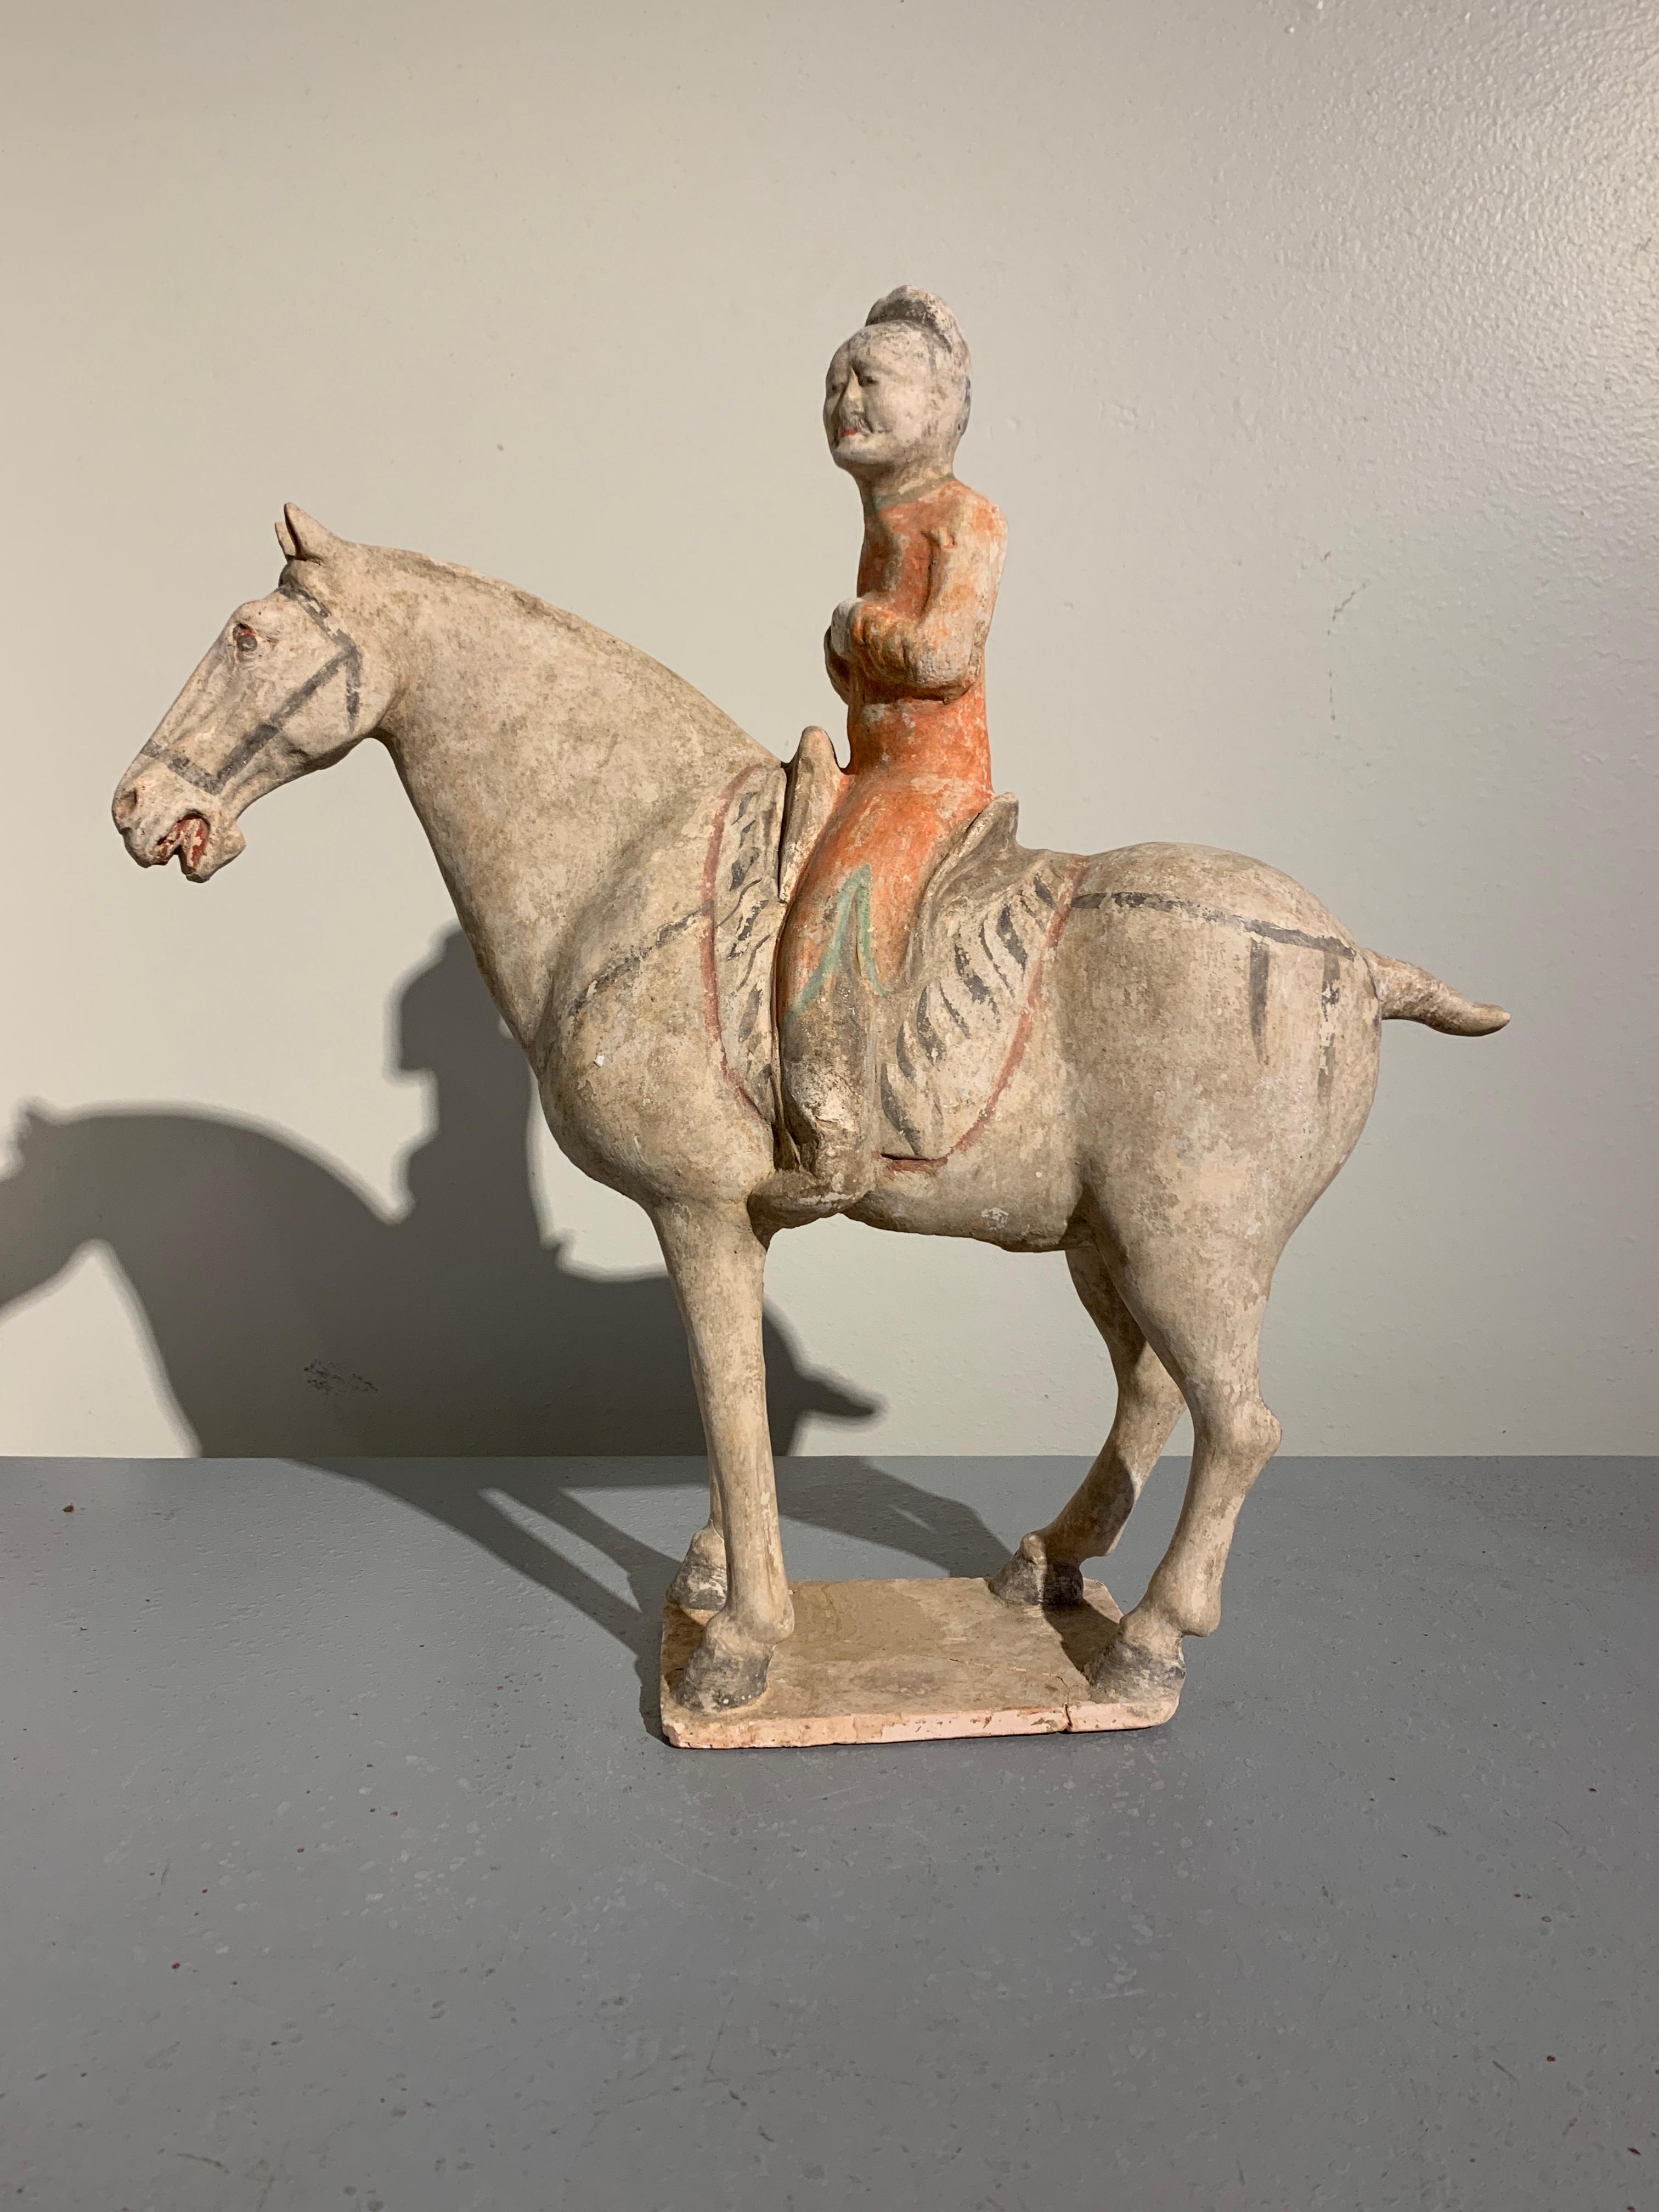 Figure de cheval et de cavalier en poterie peinte, merveilleusement modelée, dynastie Tang (618-906 AD), vers le 9e siècle, Chine. TL testé par Oxford Authentication.

Une représentation classique d'un cheval et d'un cavalier de la dynastie Tang,